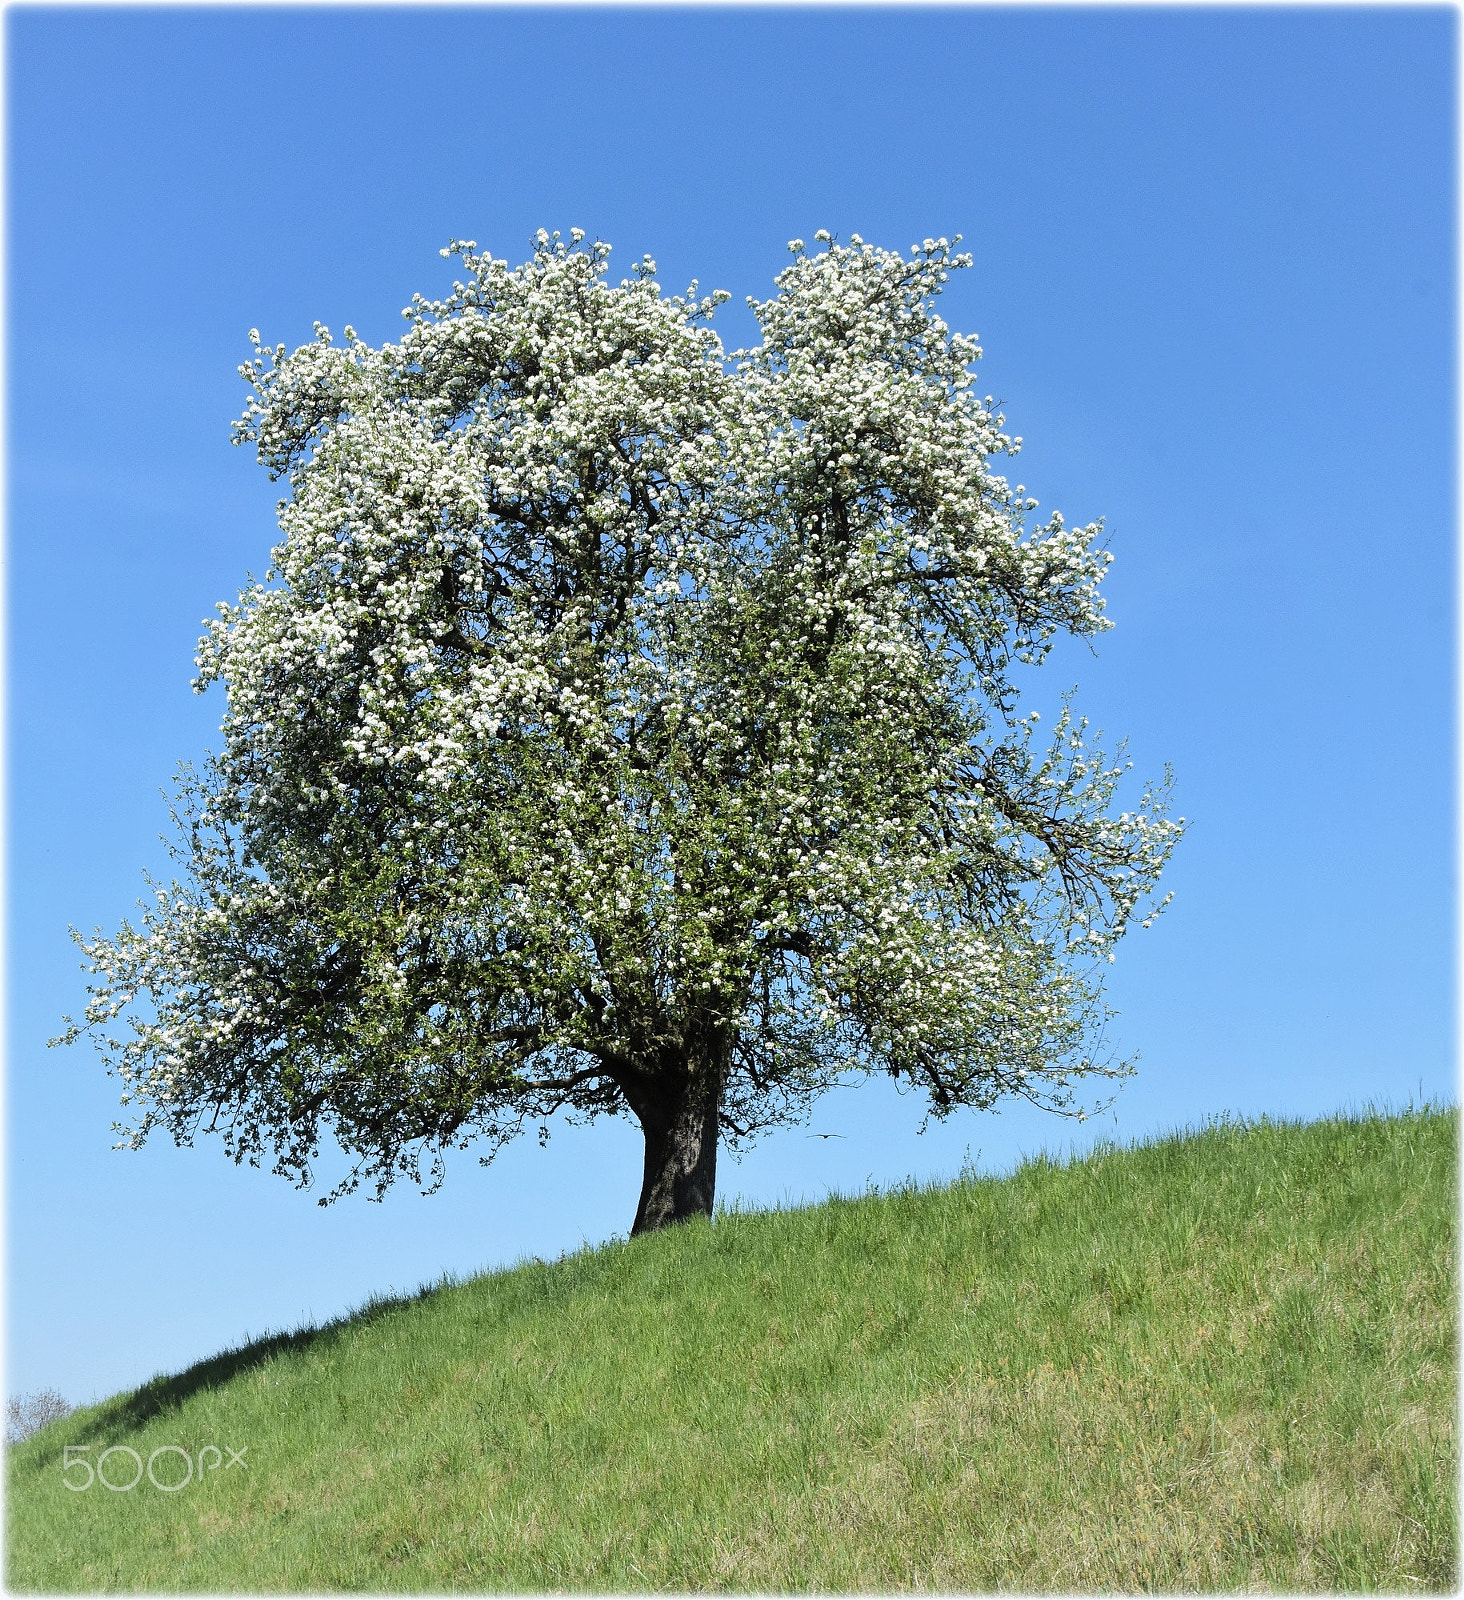 Nikon D7200 sample photo. "blossom tree" photography